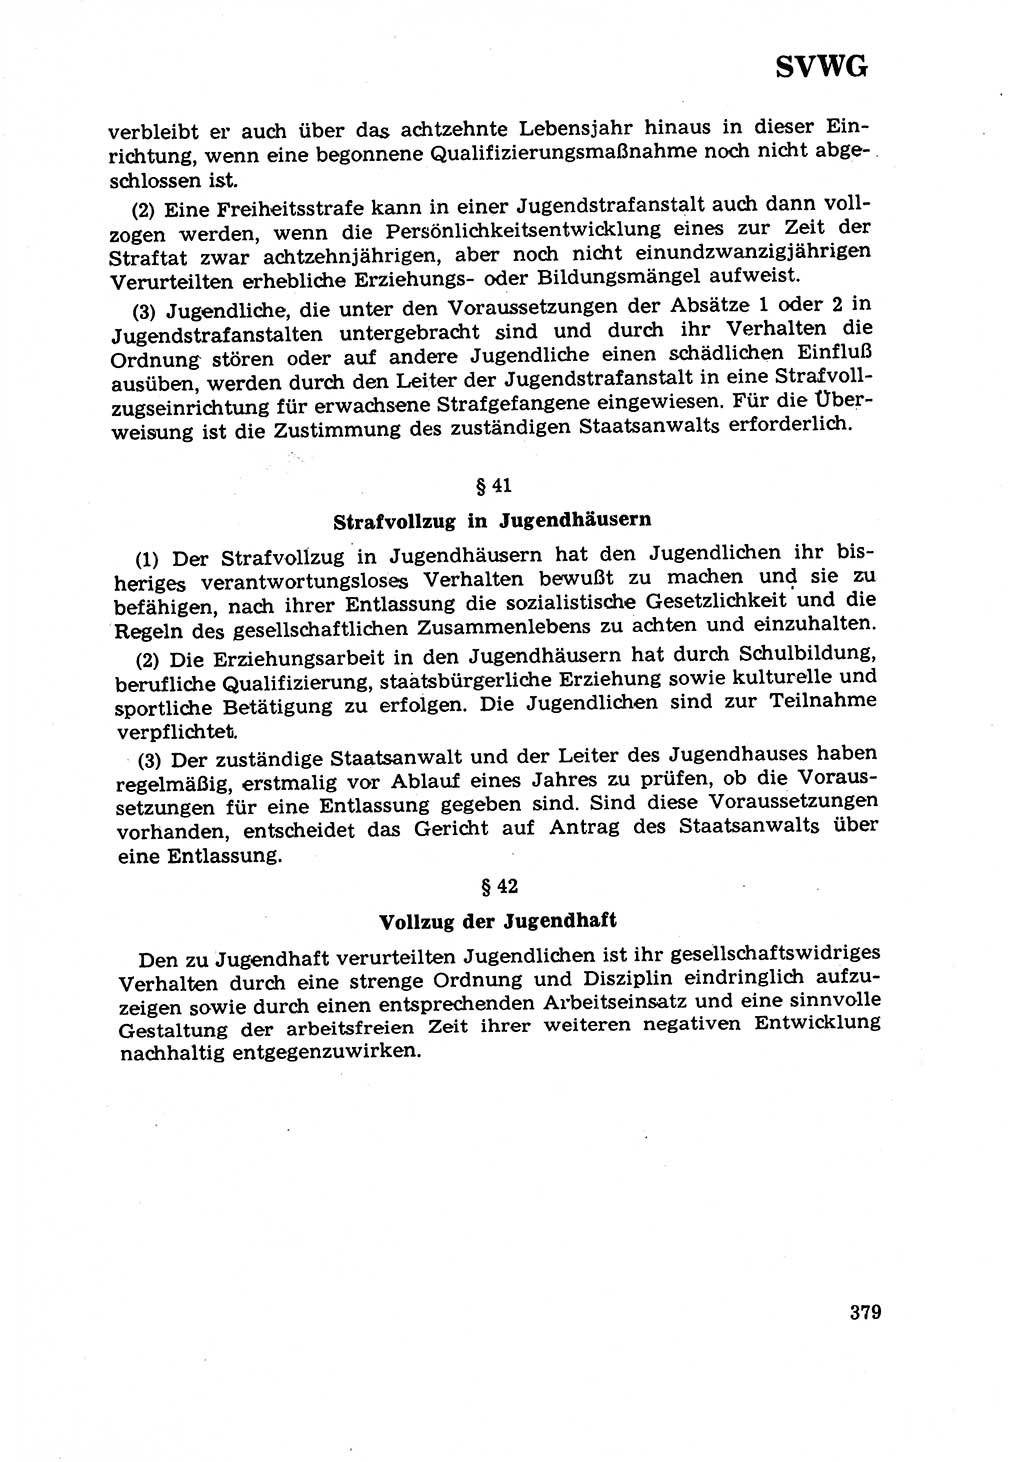 Strafrecht [Deutsche Demokratische Republik (DDR)] 1968, Seite 379 (Strafr. DDR 1968, S. 379)